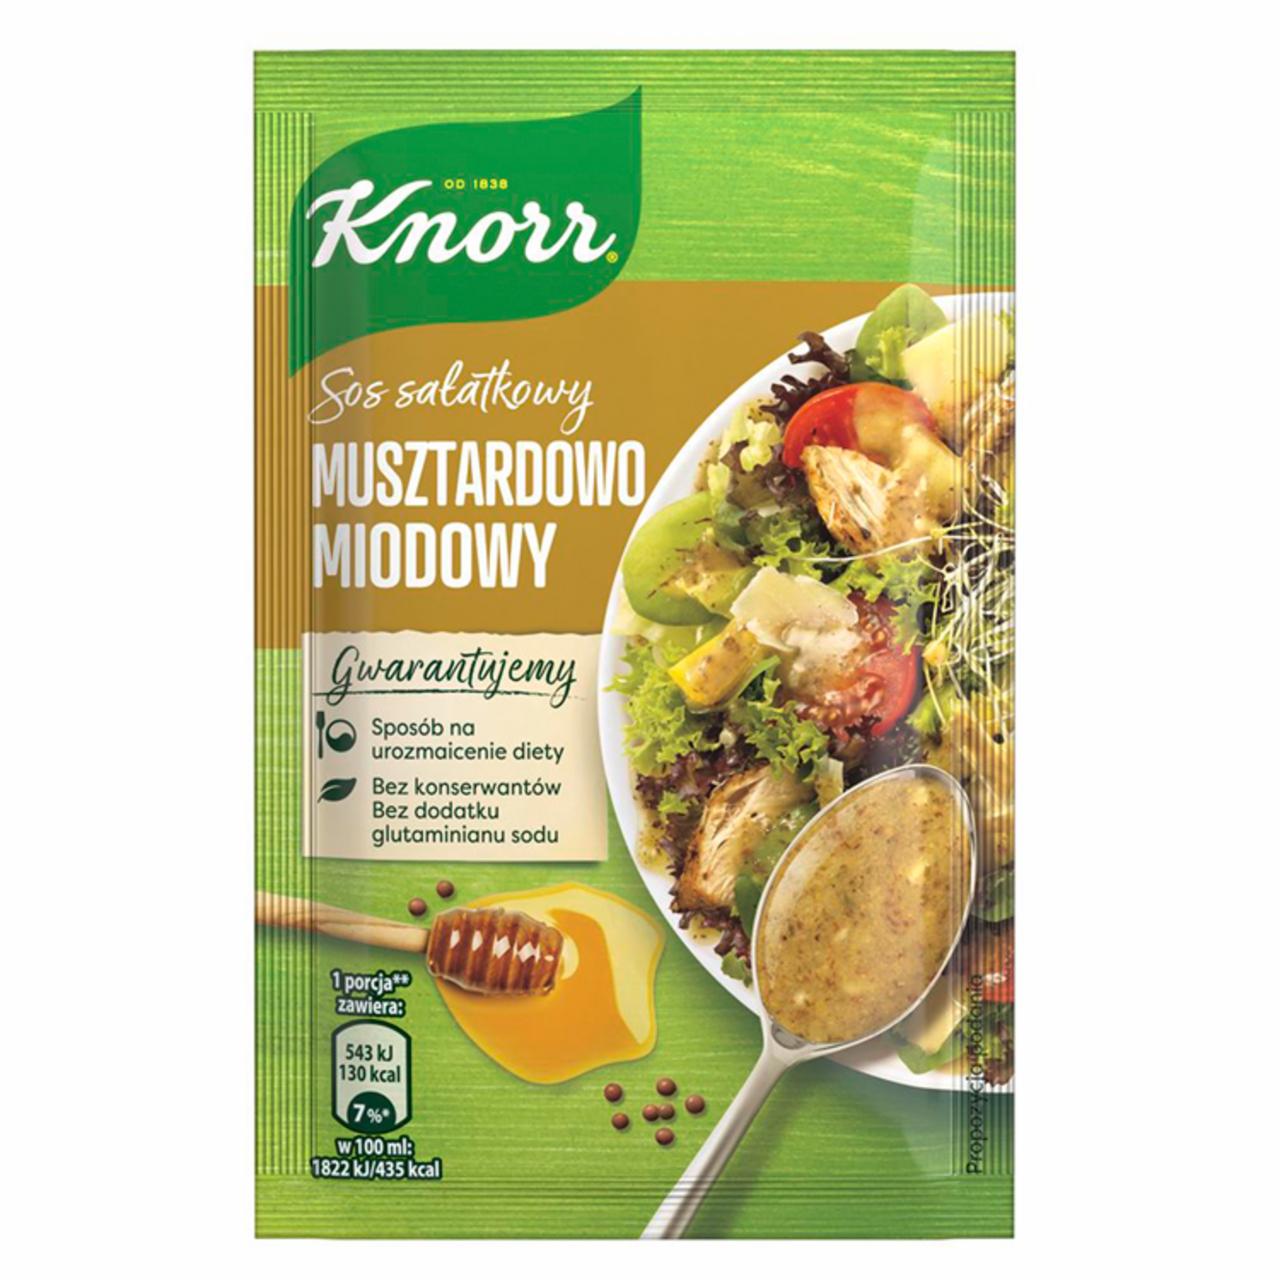 Zdjęcia - Knorr Sos sałatkowy musztardowo-miodowy 8 g